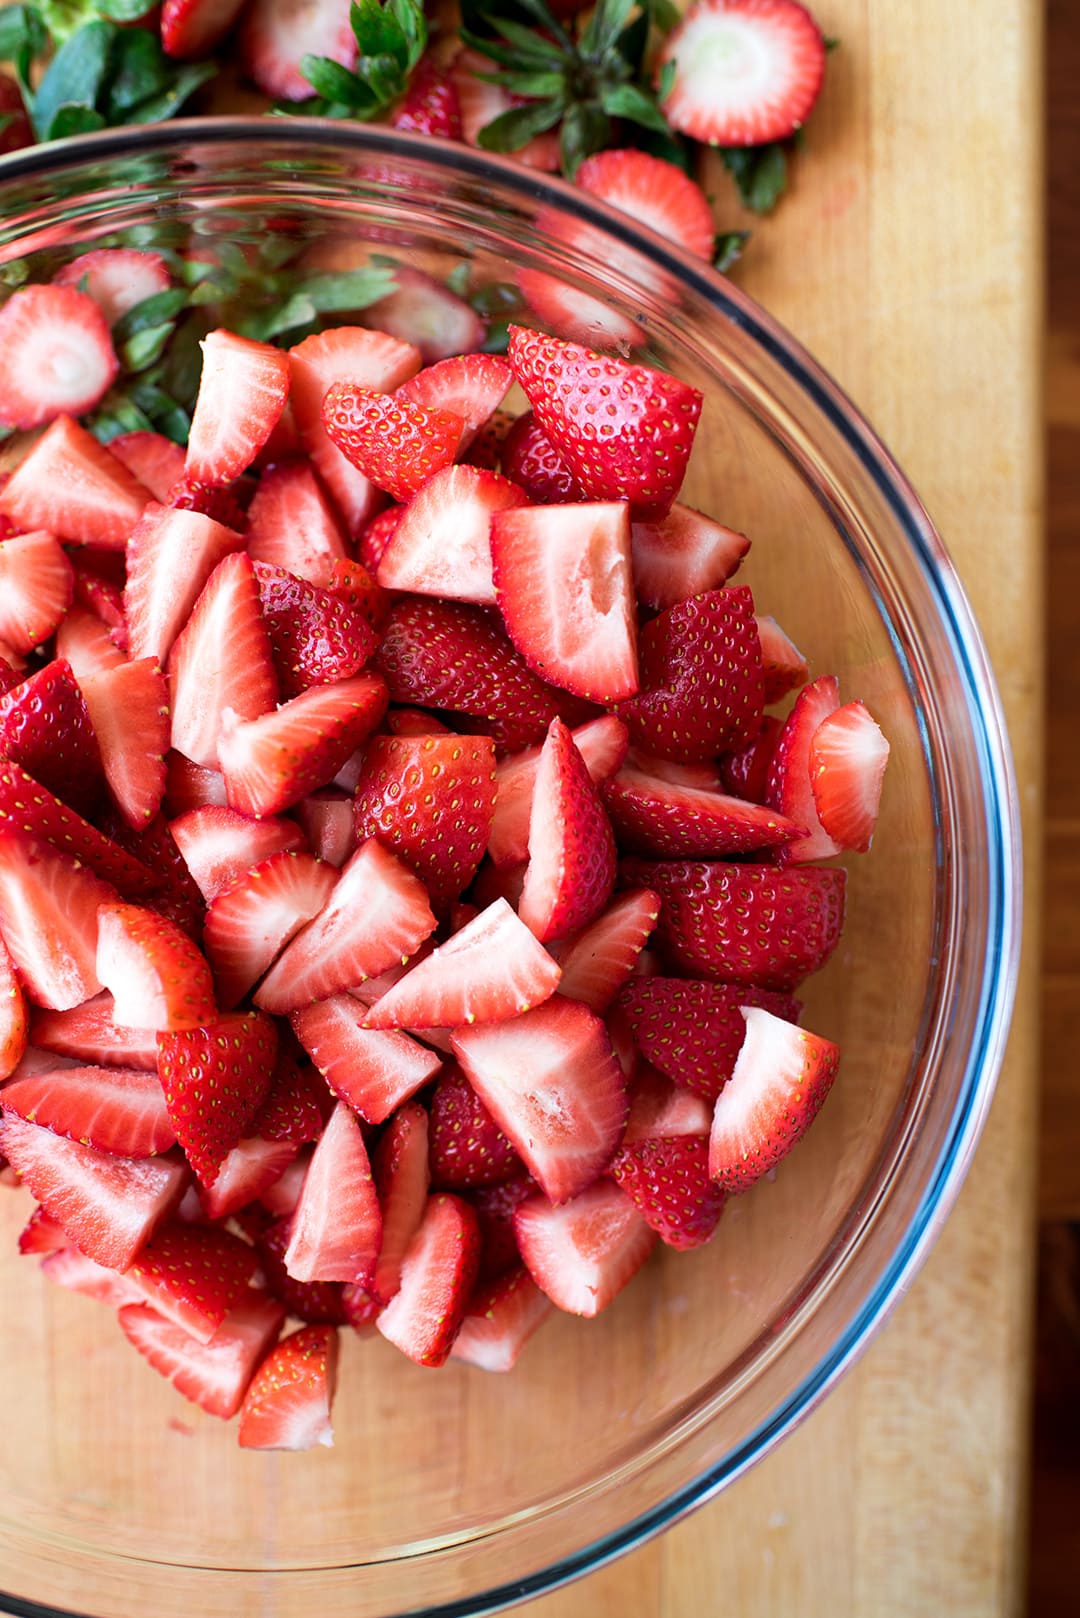 Fresh cut strawberries for homemade strawberry ice cream